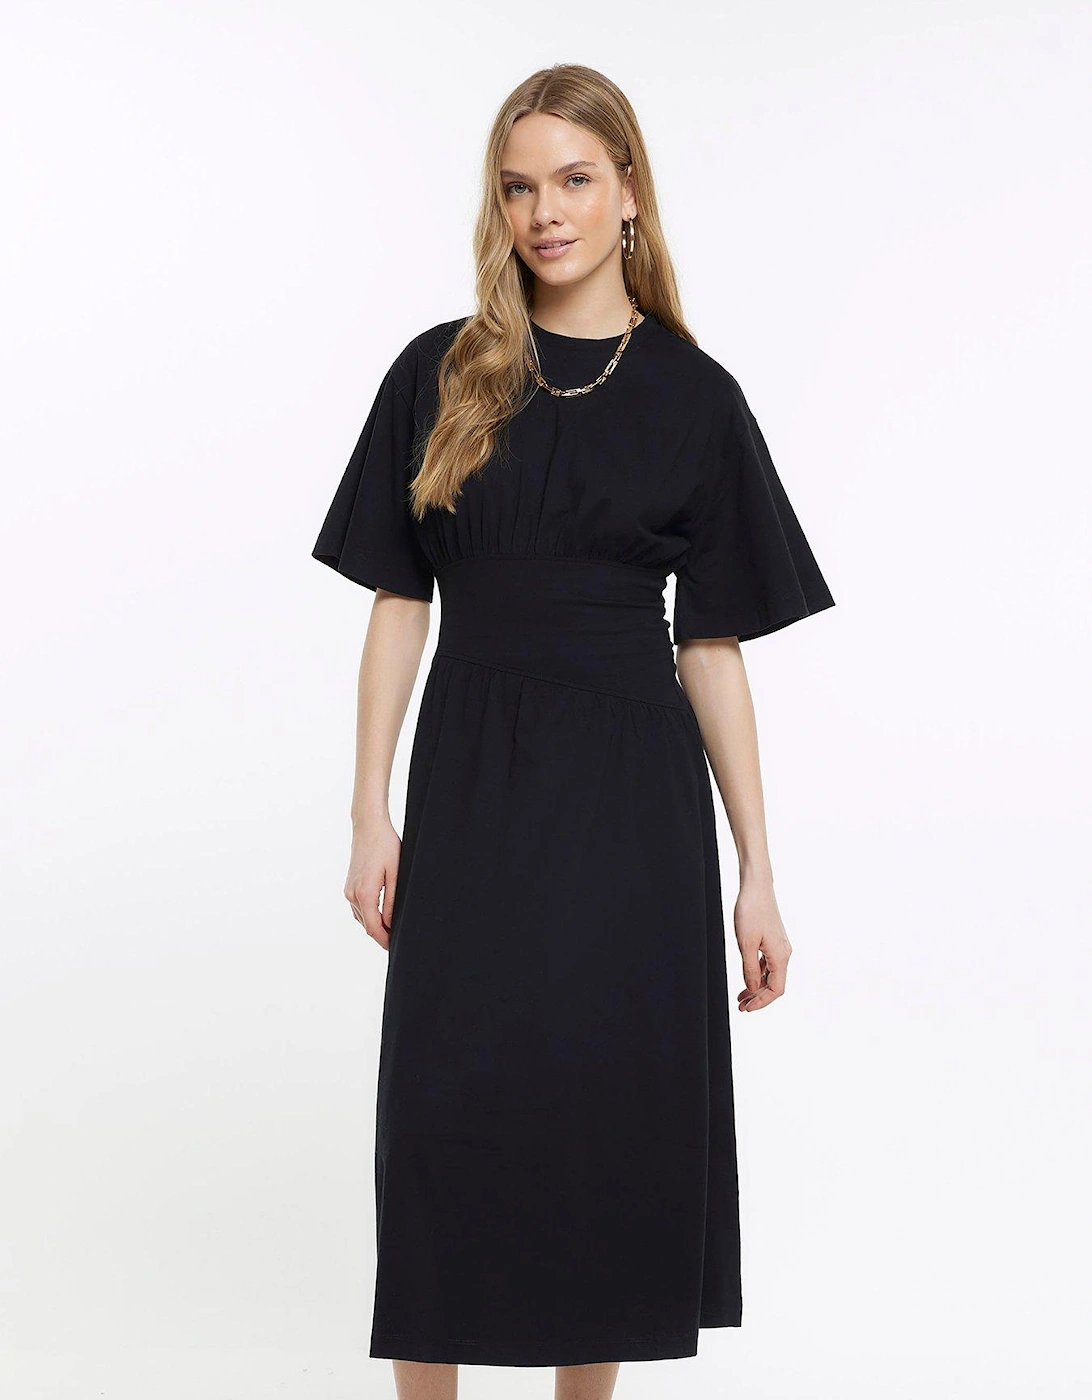 Midi Tee Dress - Black, 3 of 2